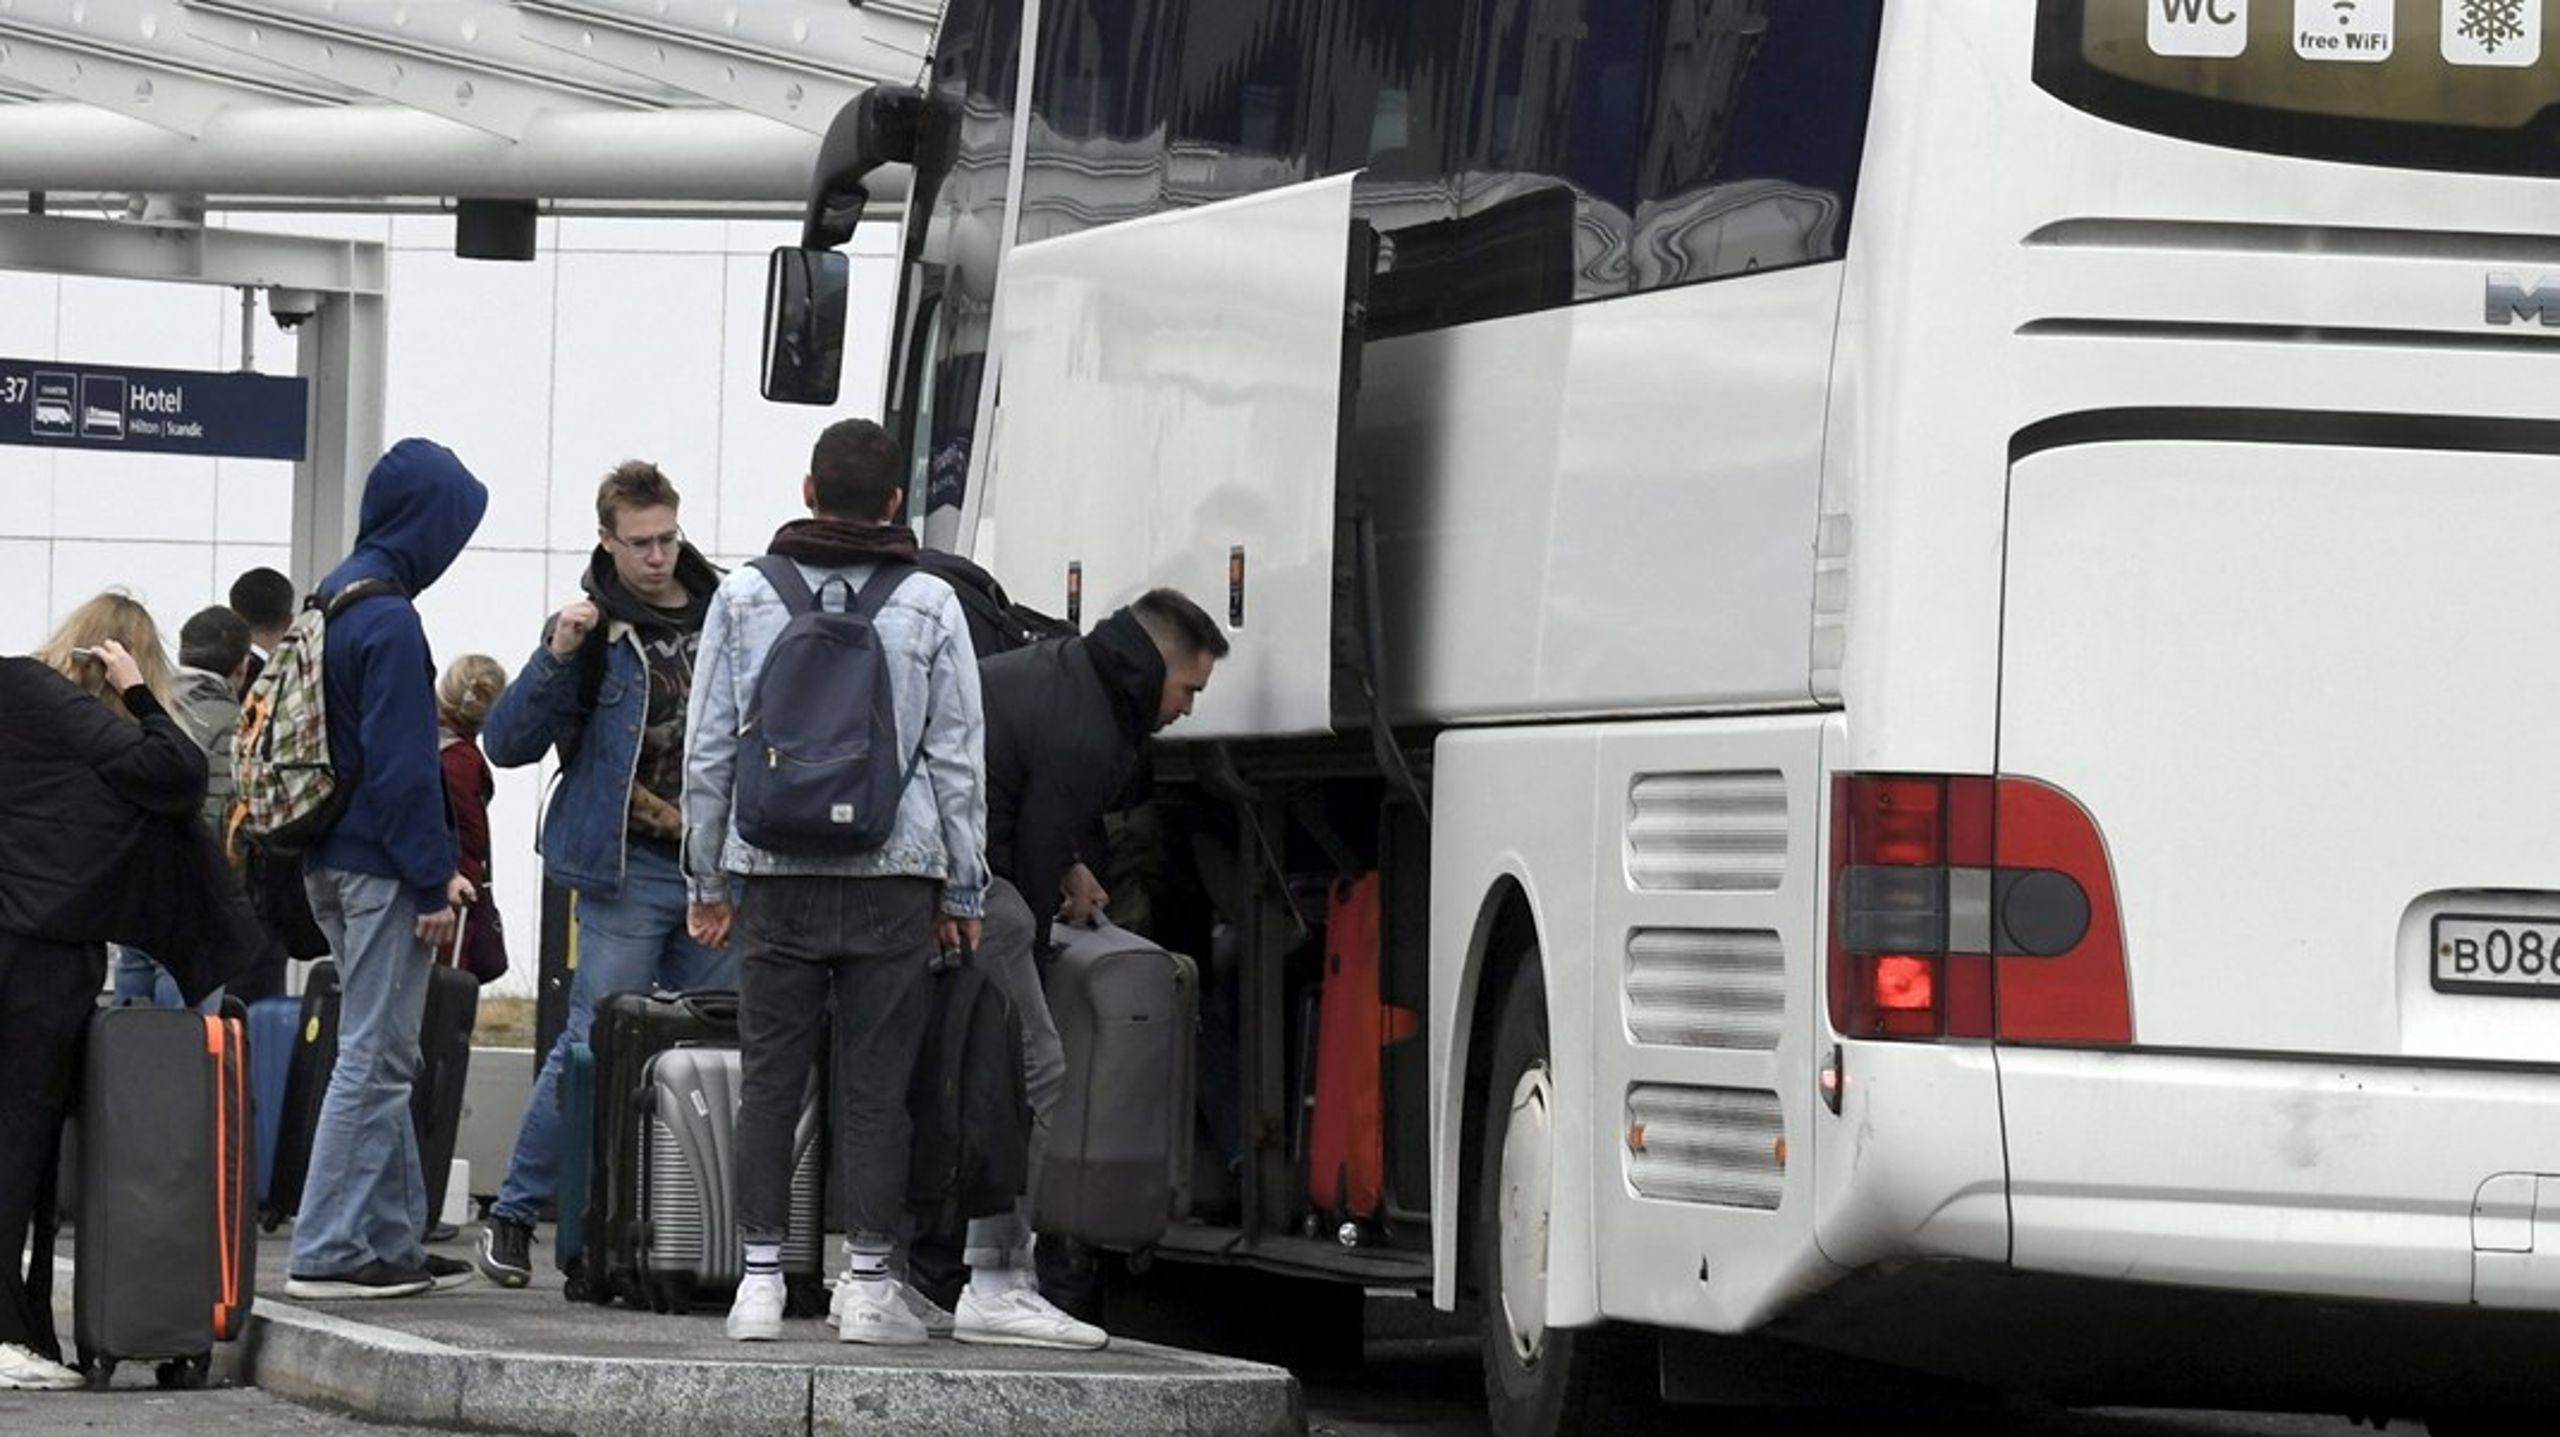 Russere stiger af en bus fra Sankt Petersborg i Finland. I efteråret suspenderede EU en visumaftale med Rusland, så det blev sværere for russere at rejse på ferie i blandt andet Danmark. I podcasten taler den unge russer Dasha om at skamme sig over Ruslands handlinger.